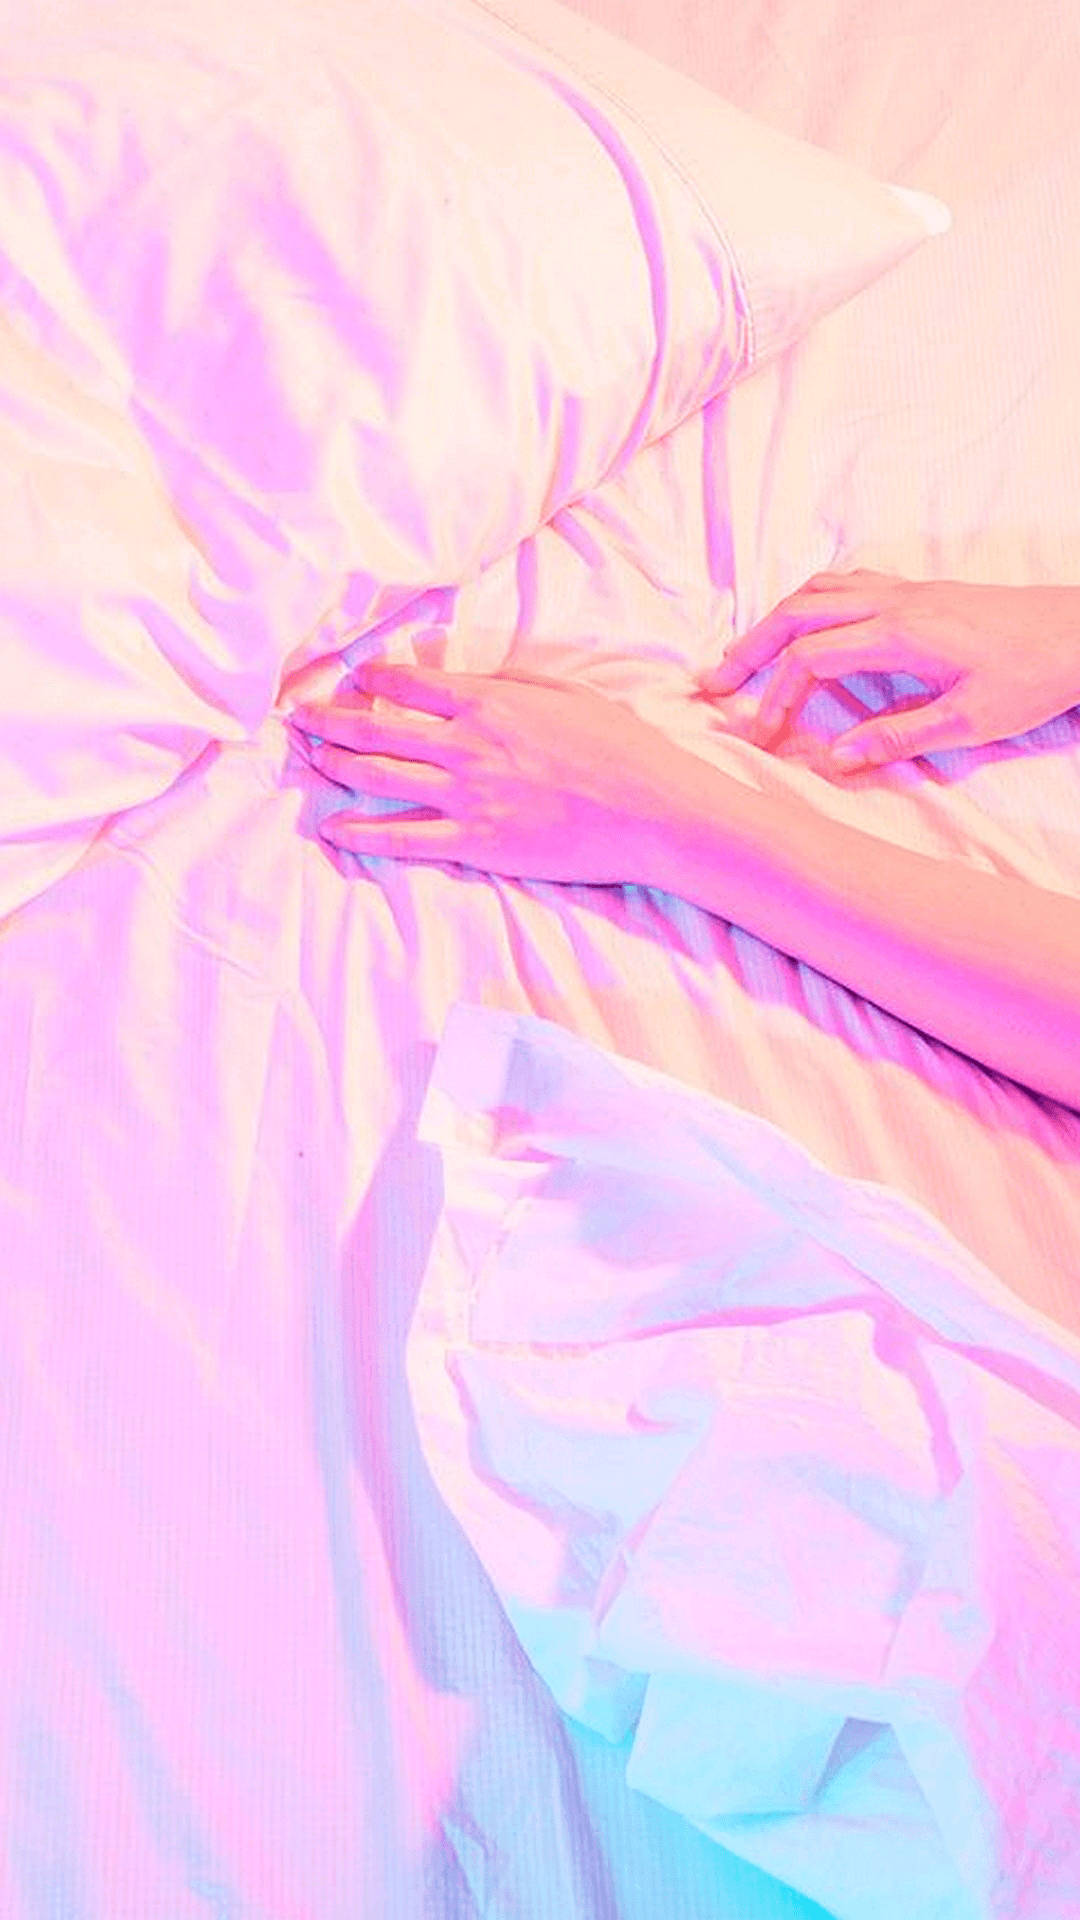 Enkvinna Liggande På En Säng Med En Rosa Filt. Wallpaper